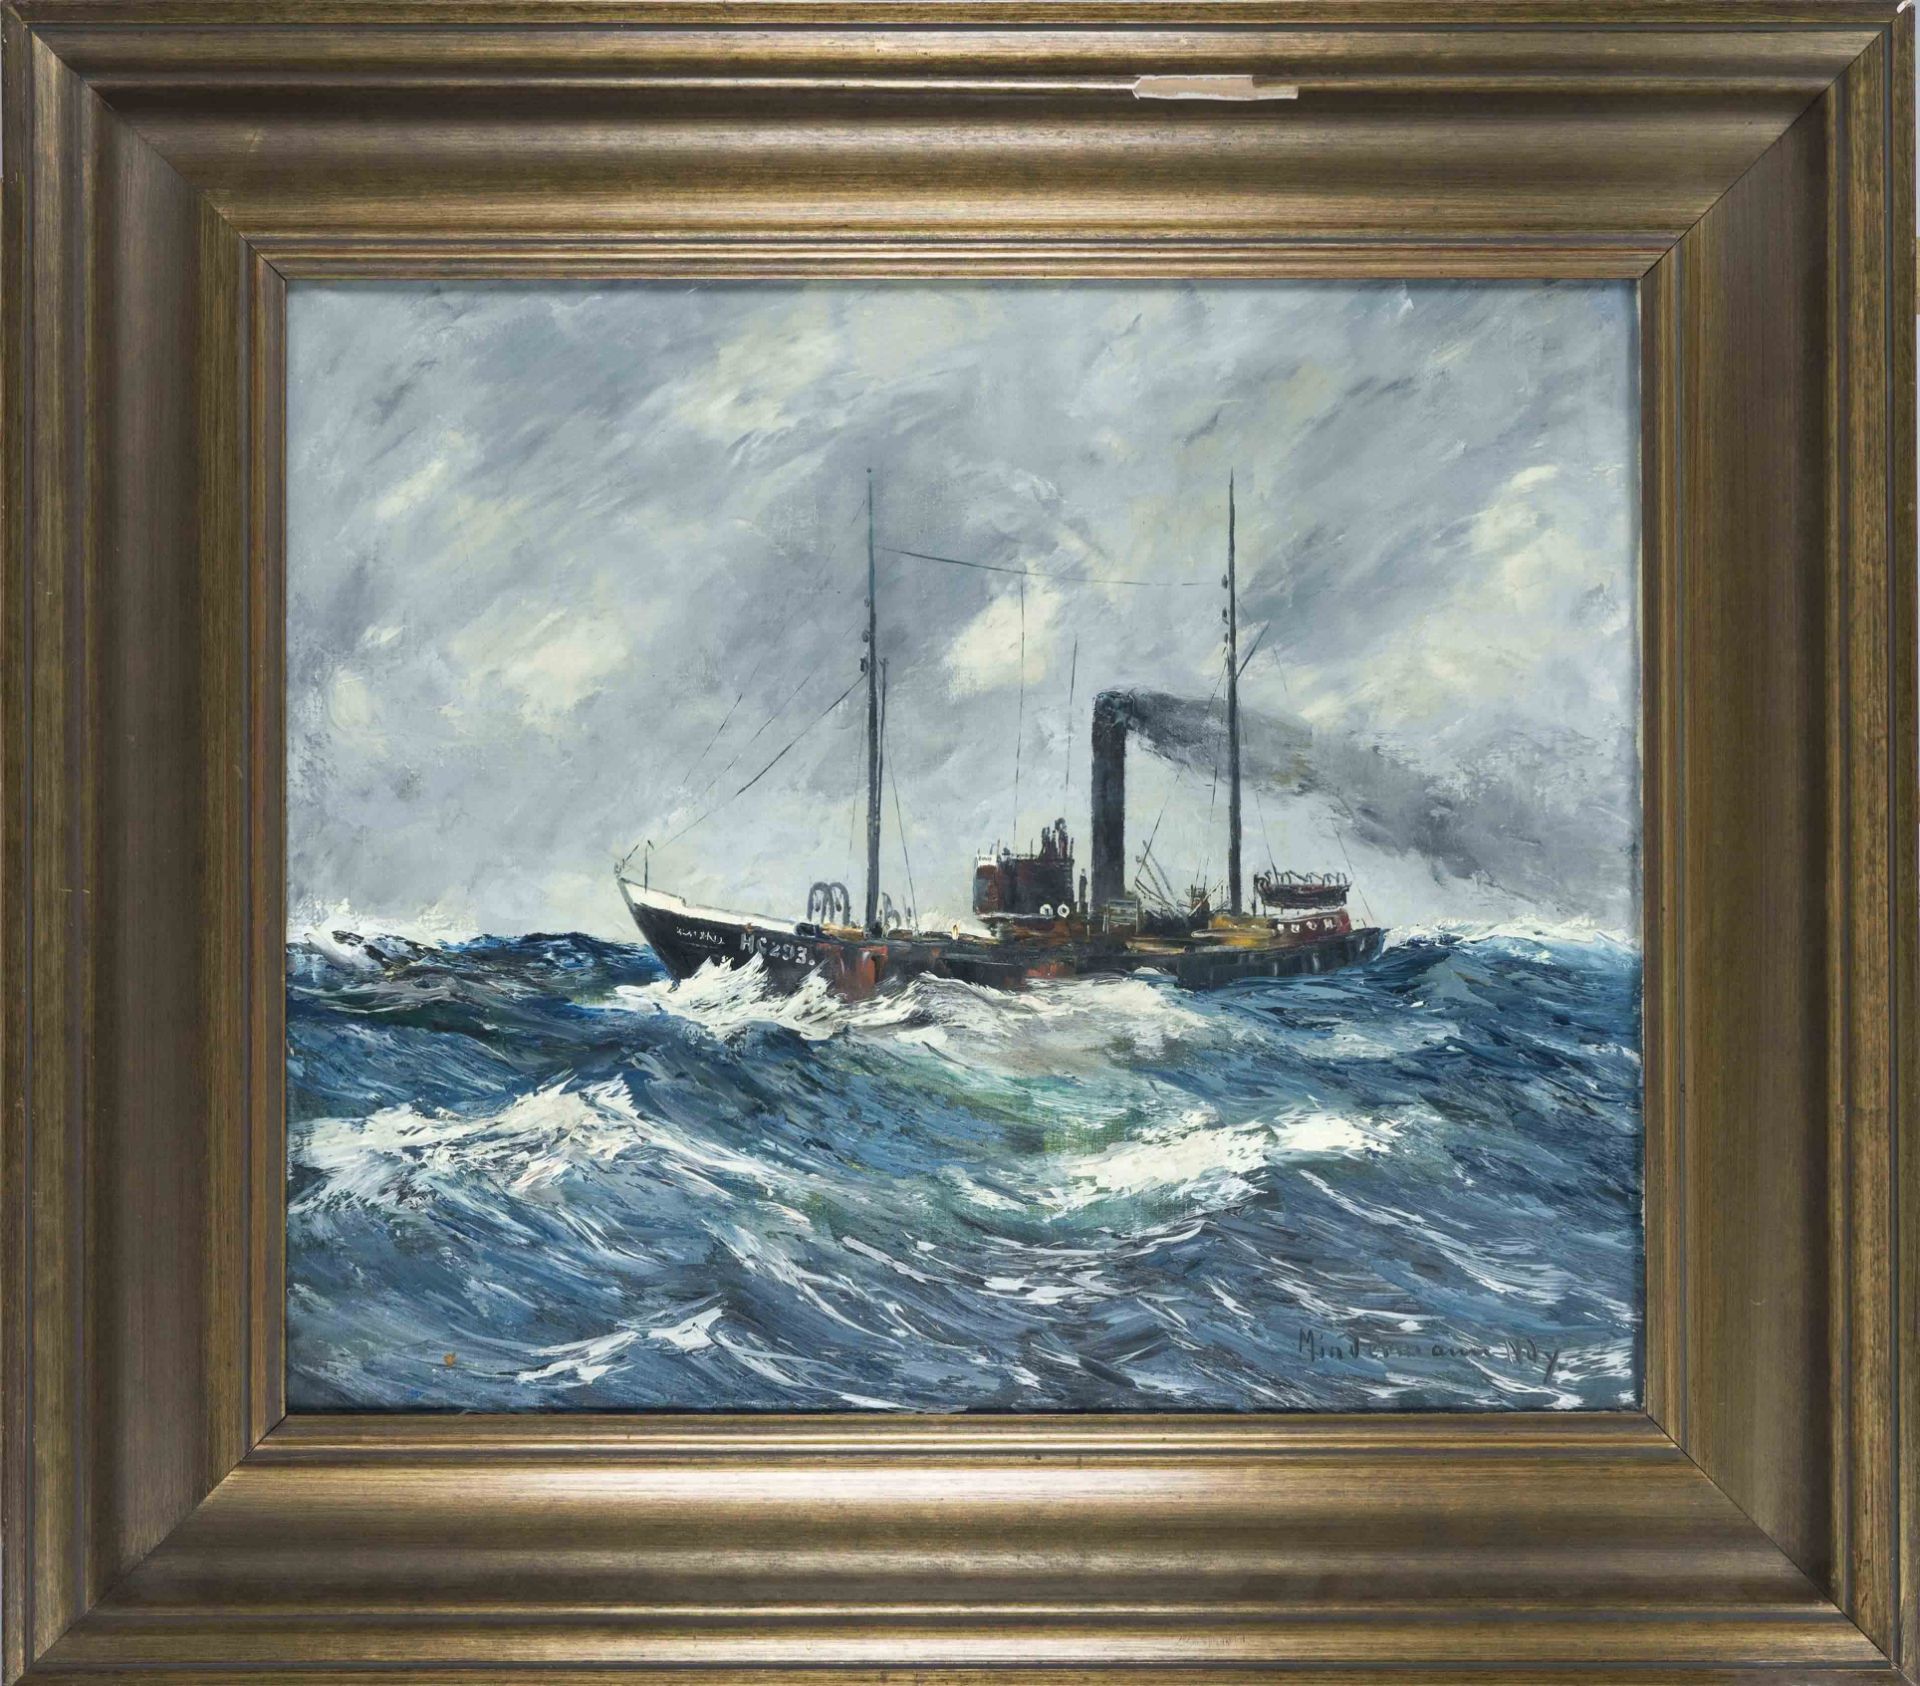 Heinz Mindermann (1872-1959), Bremen marine painter, Steamer on a stormy sea, oil on canvas,